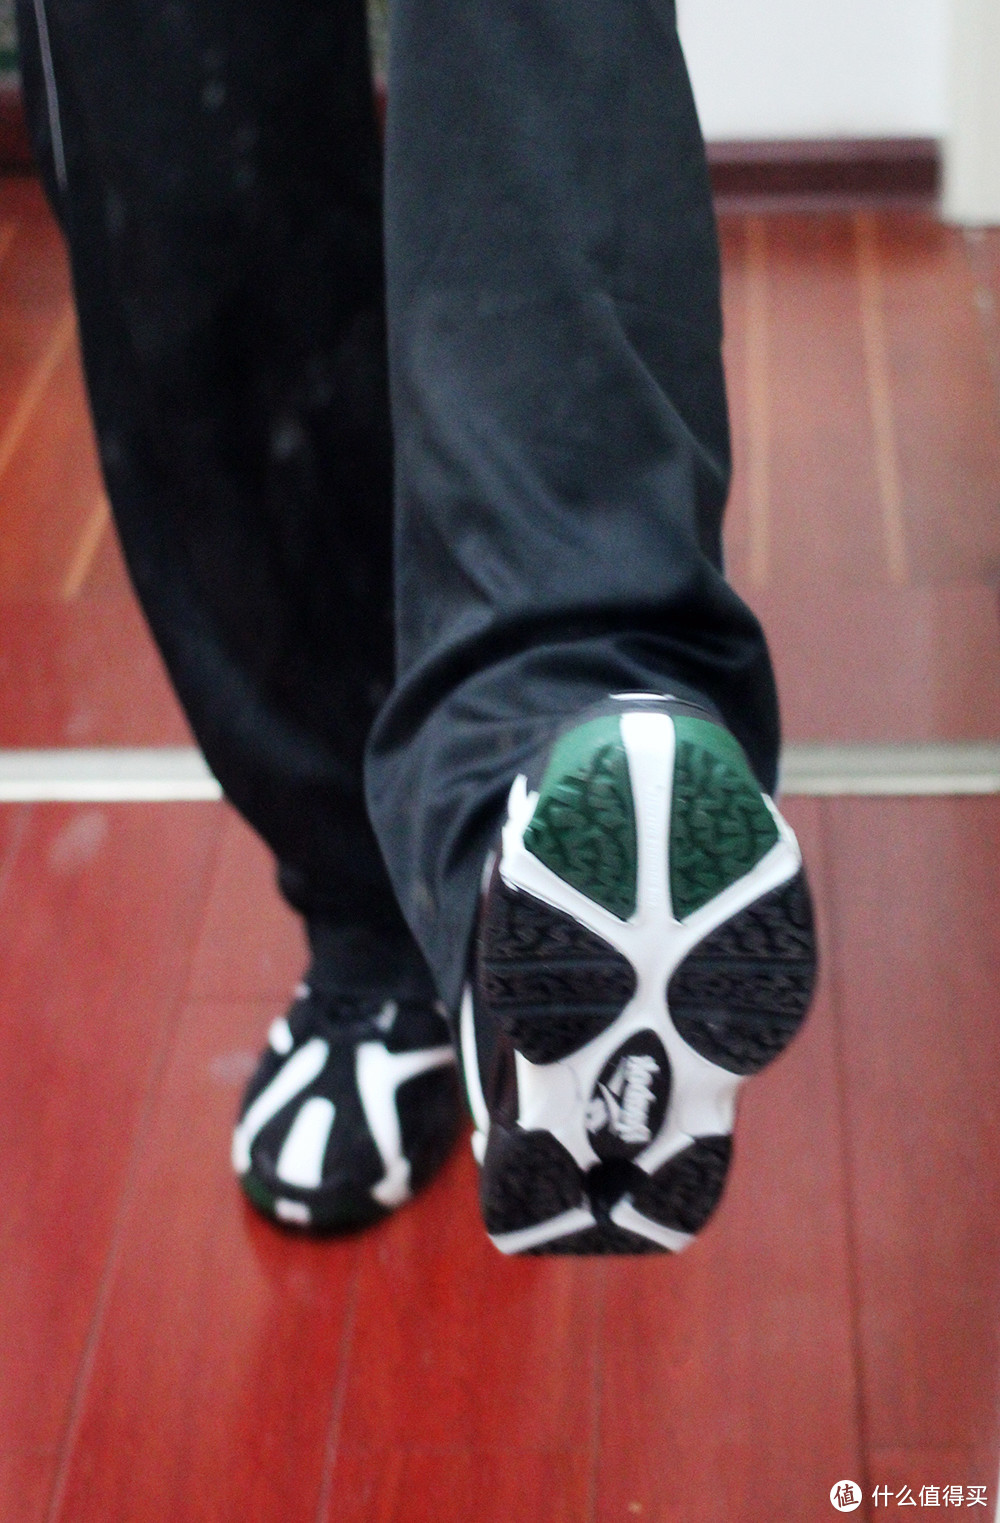 暴力美学时代的符号—Reebok Kamikazi  RBK 火山坎普一代篮球鞋简测